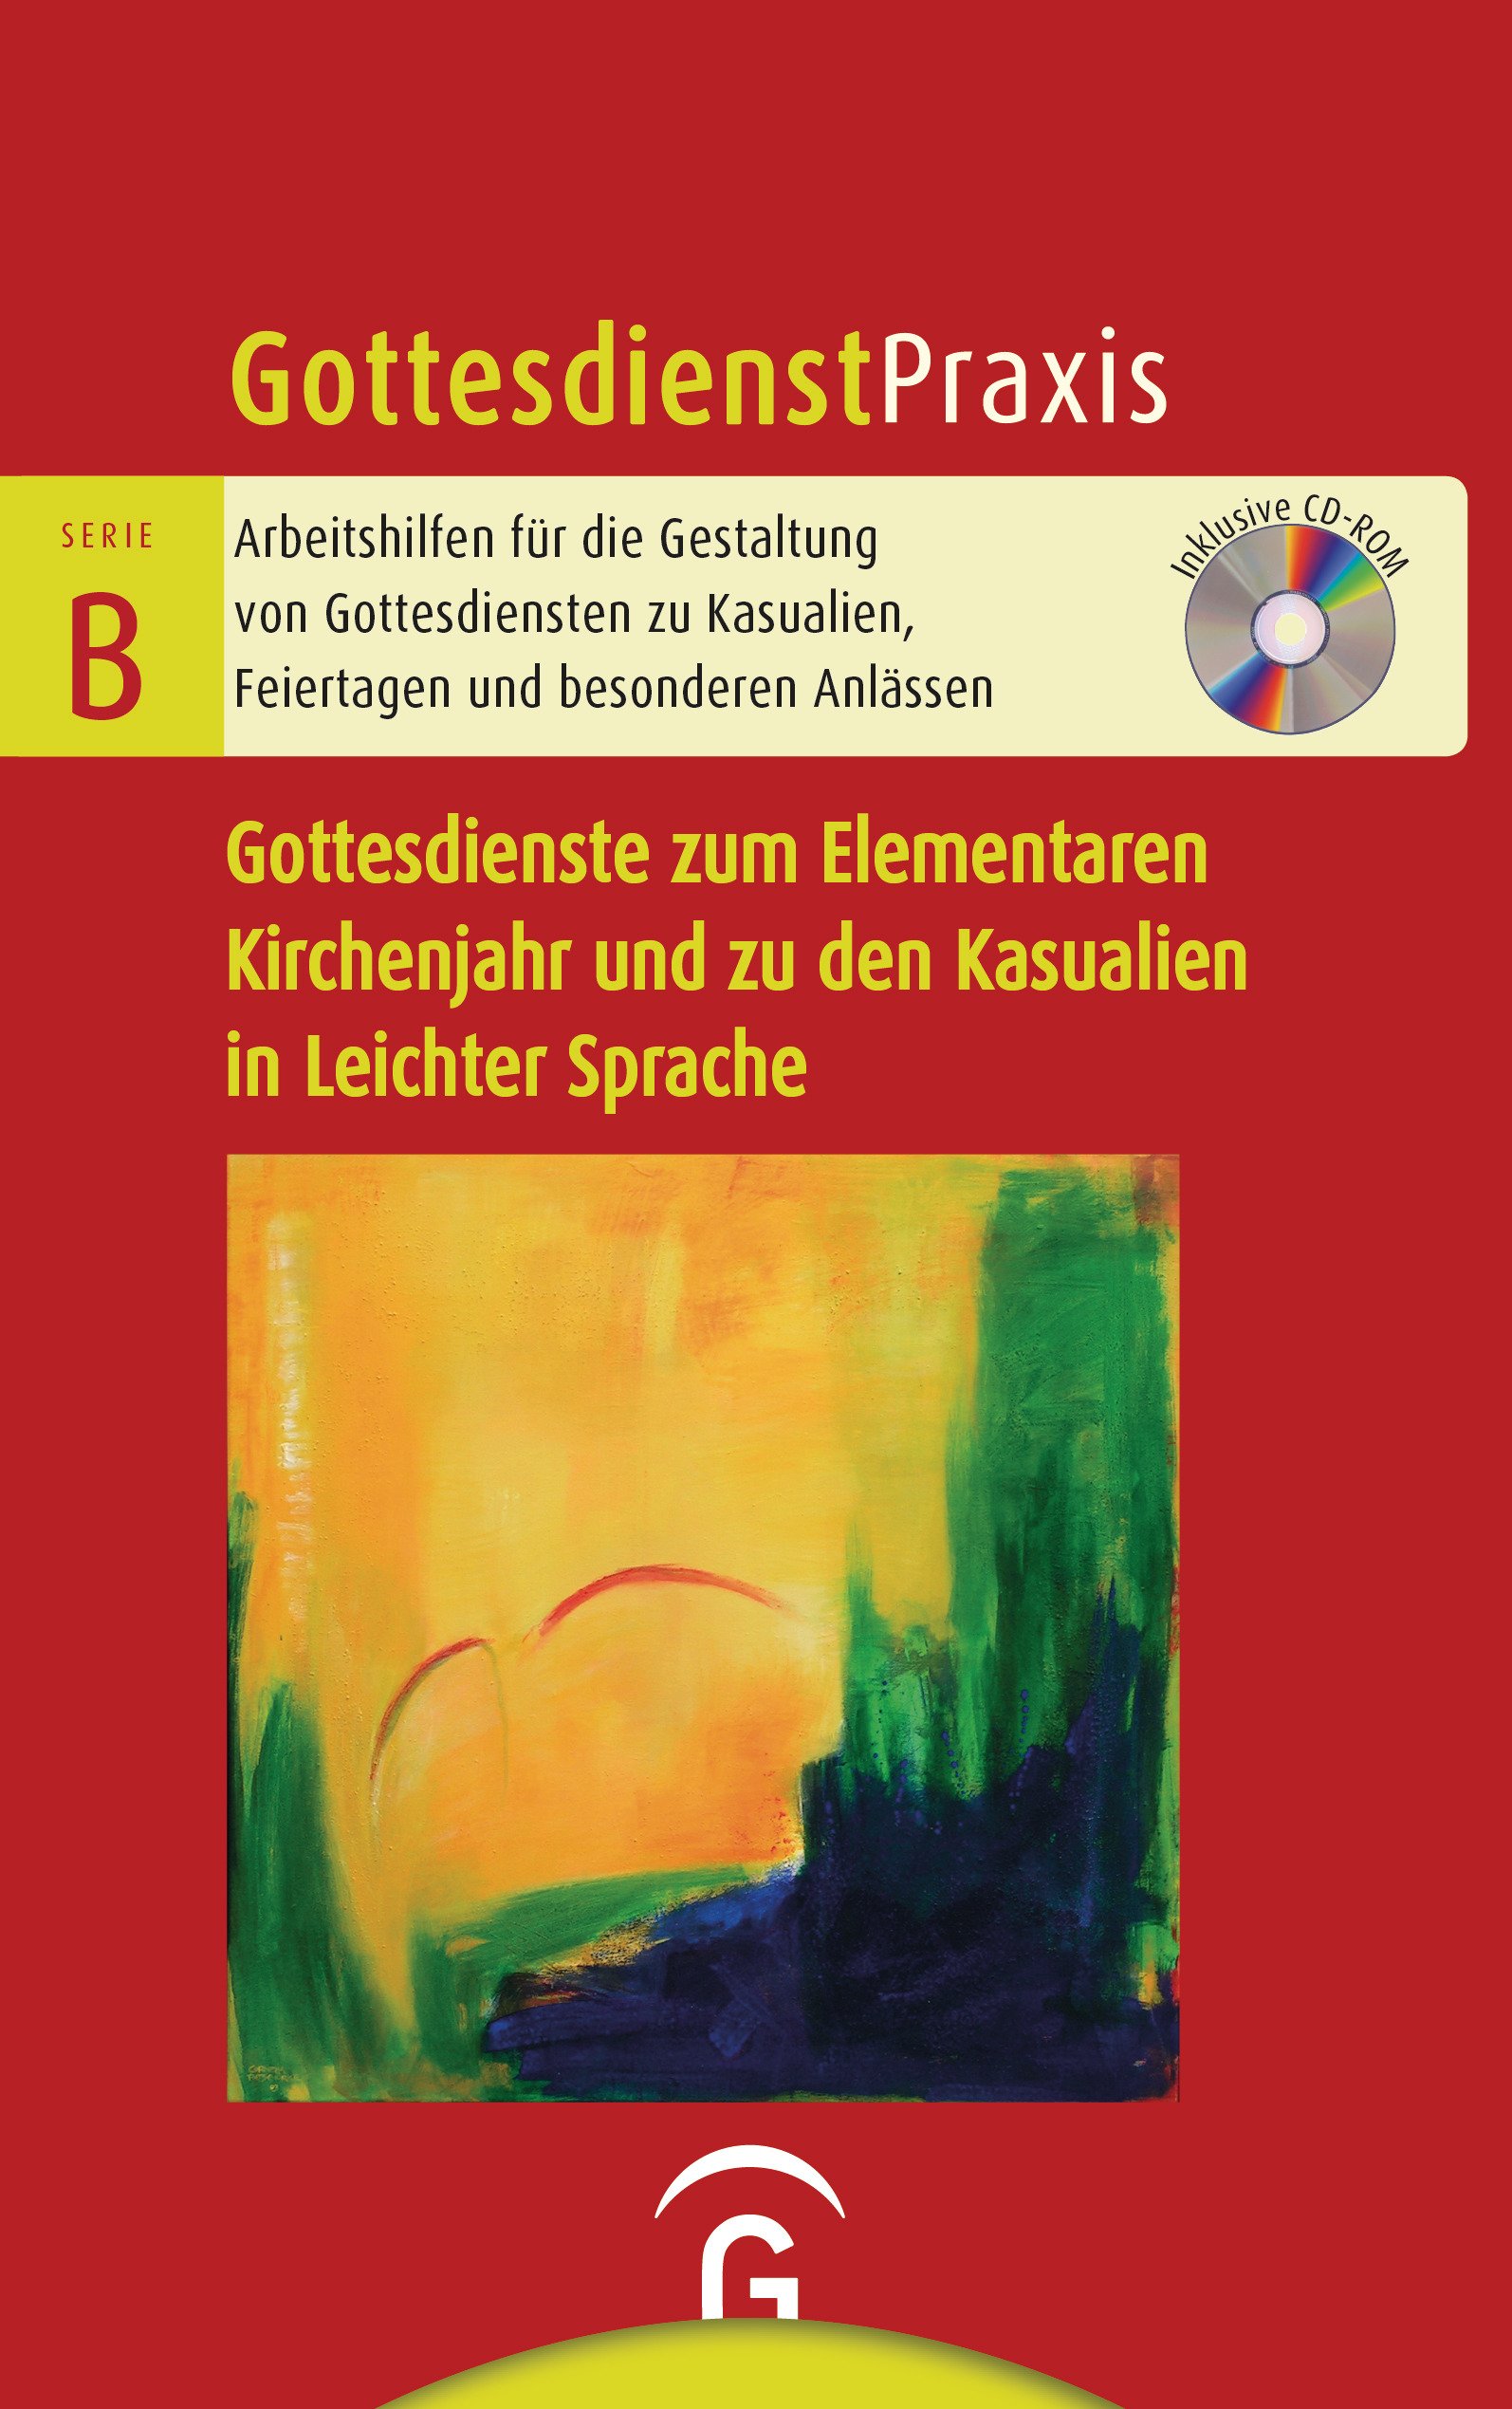 Gottesdienstpraxis Serie B Gottesdienste zum Elementaren Kirchenjahr und zu den Kasualien in Leichter Sprache - Cover